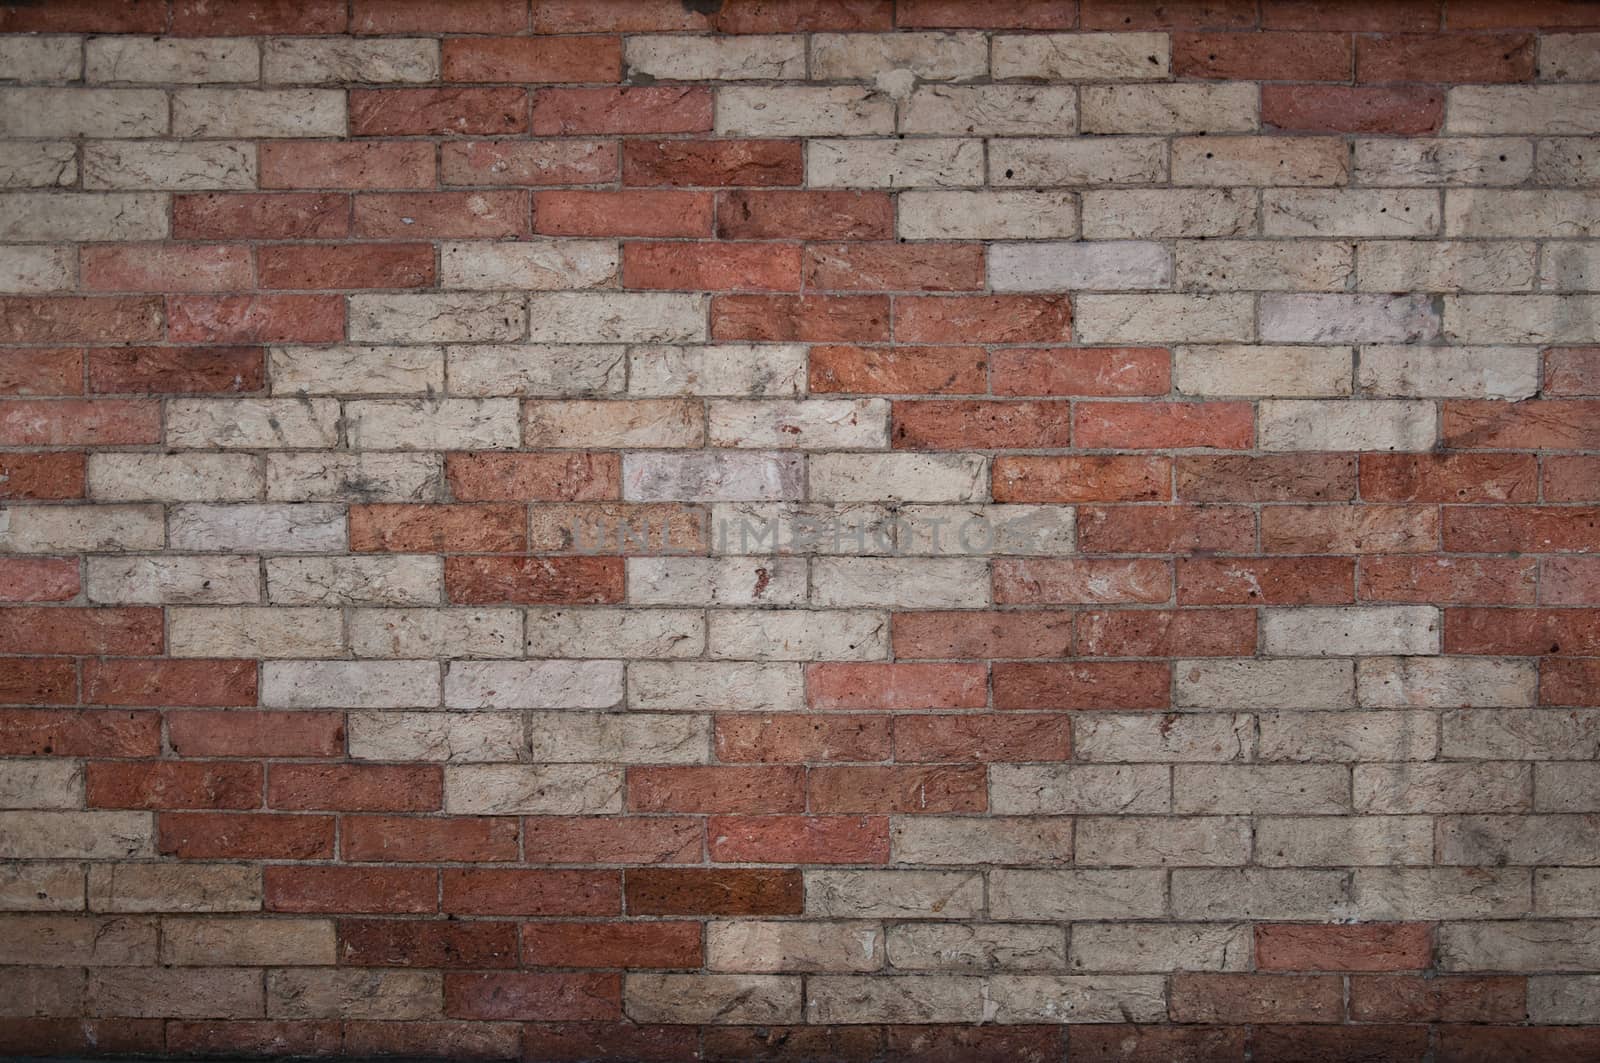 Brick background by NeydtStock